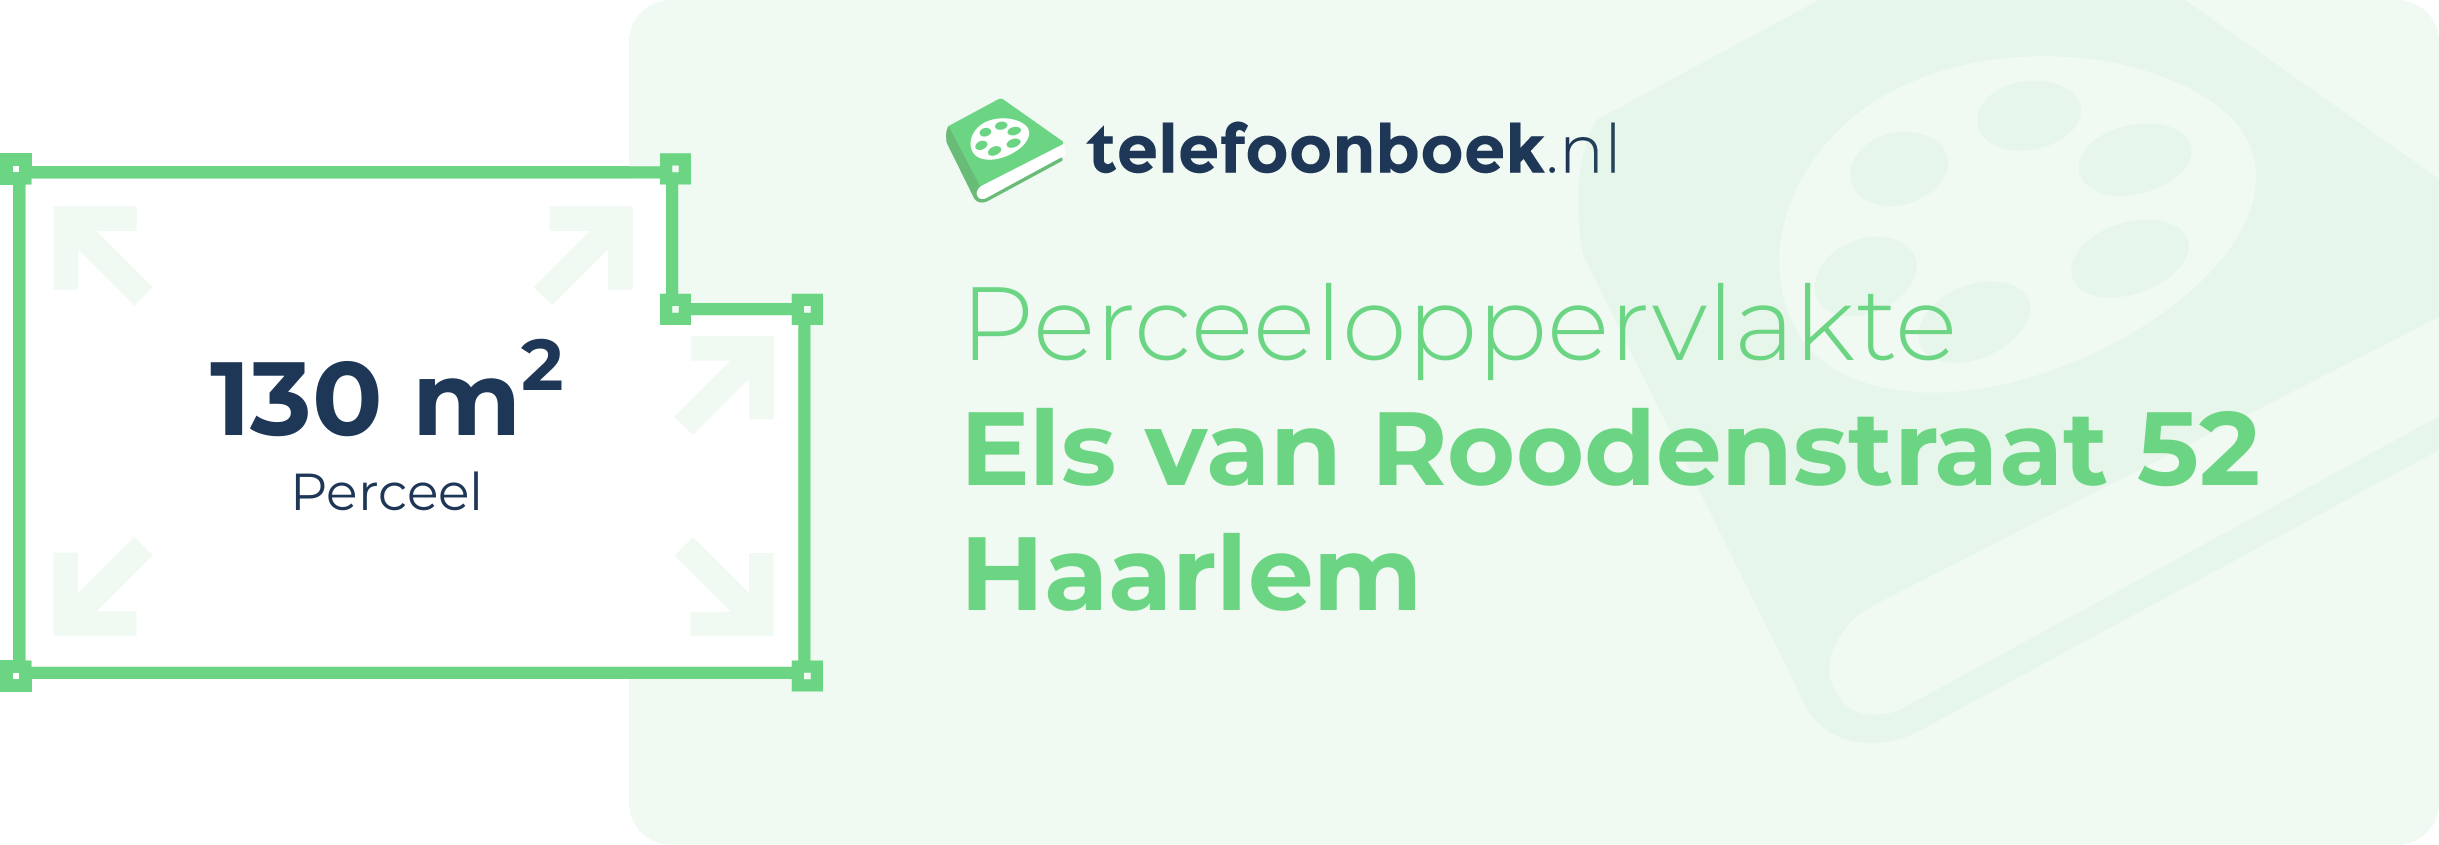 Perceeloppervlakte Els Van Roodenstraat 52 Haarlem